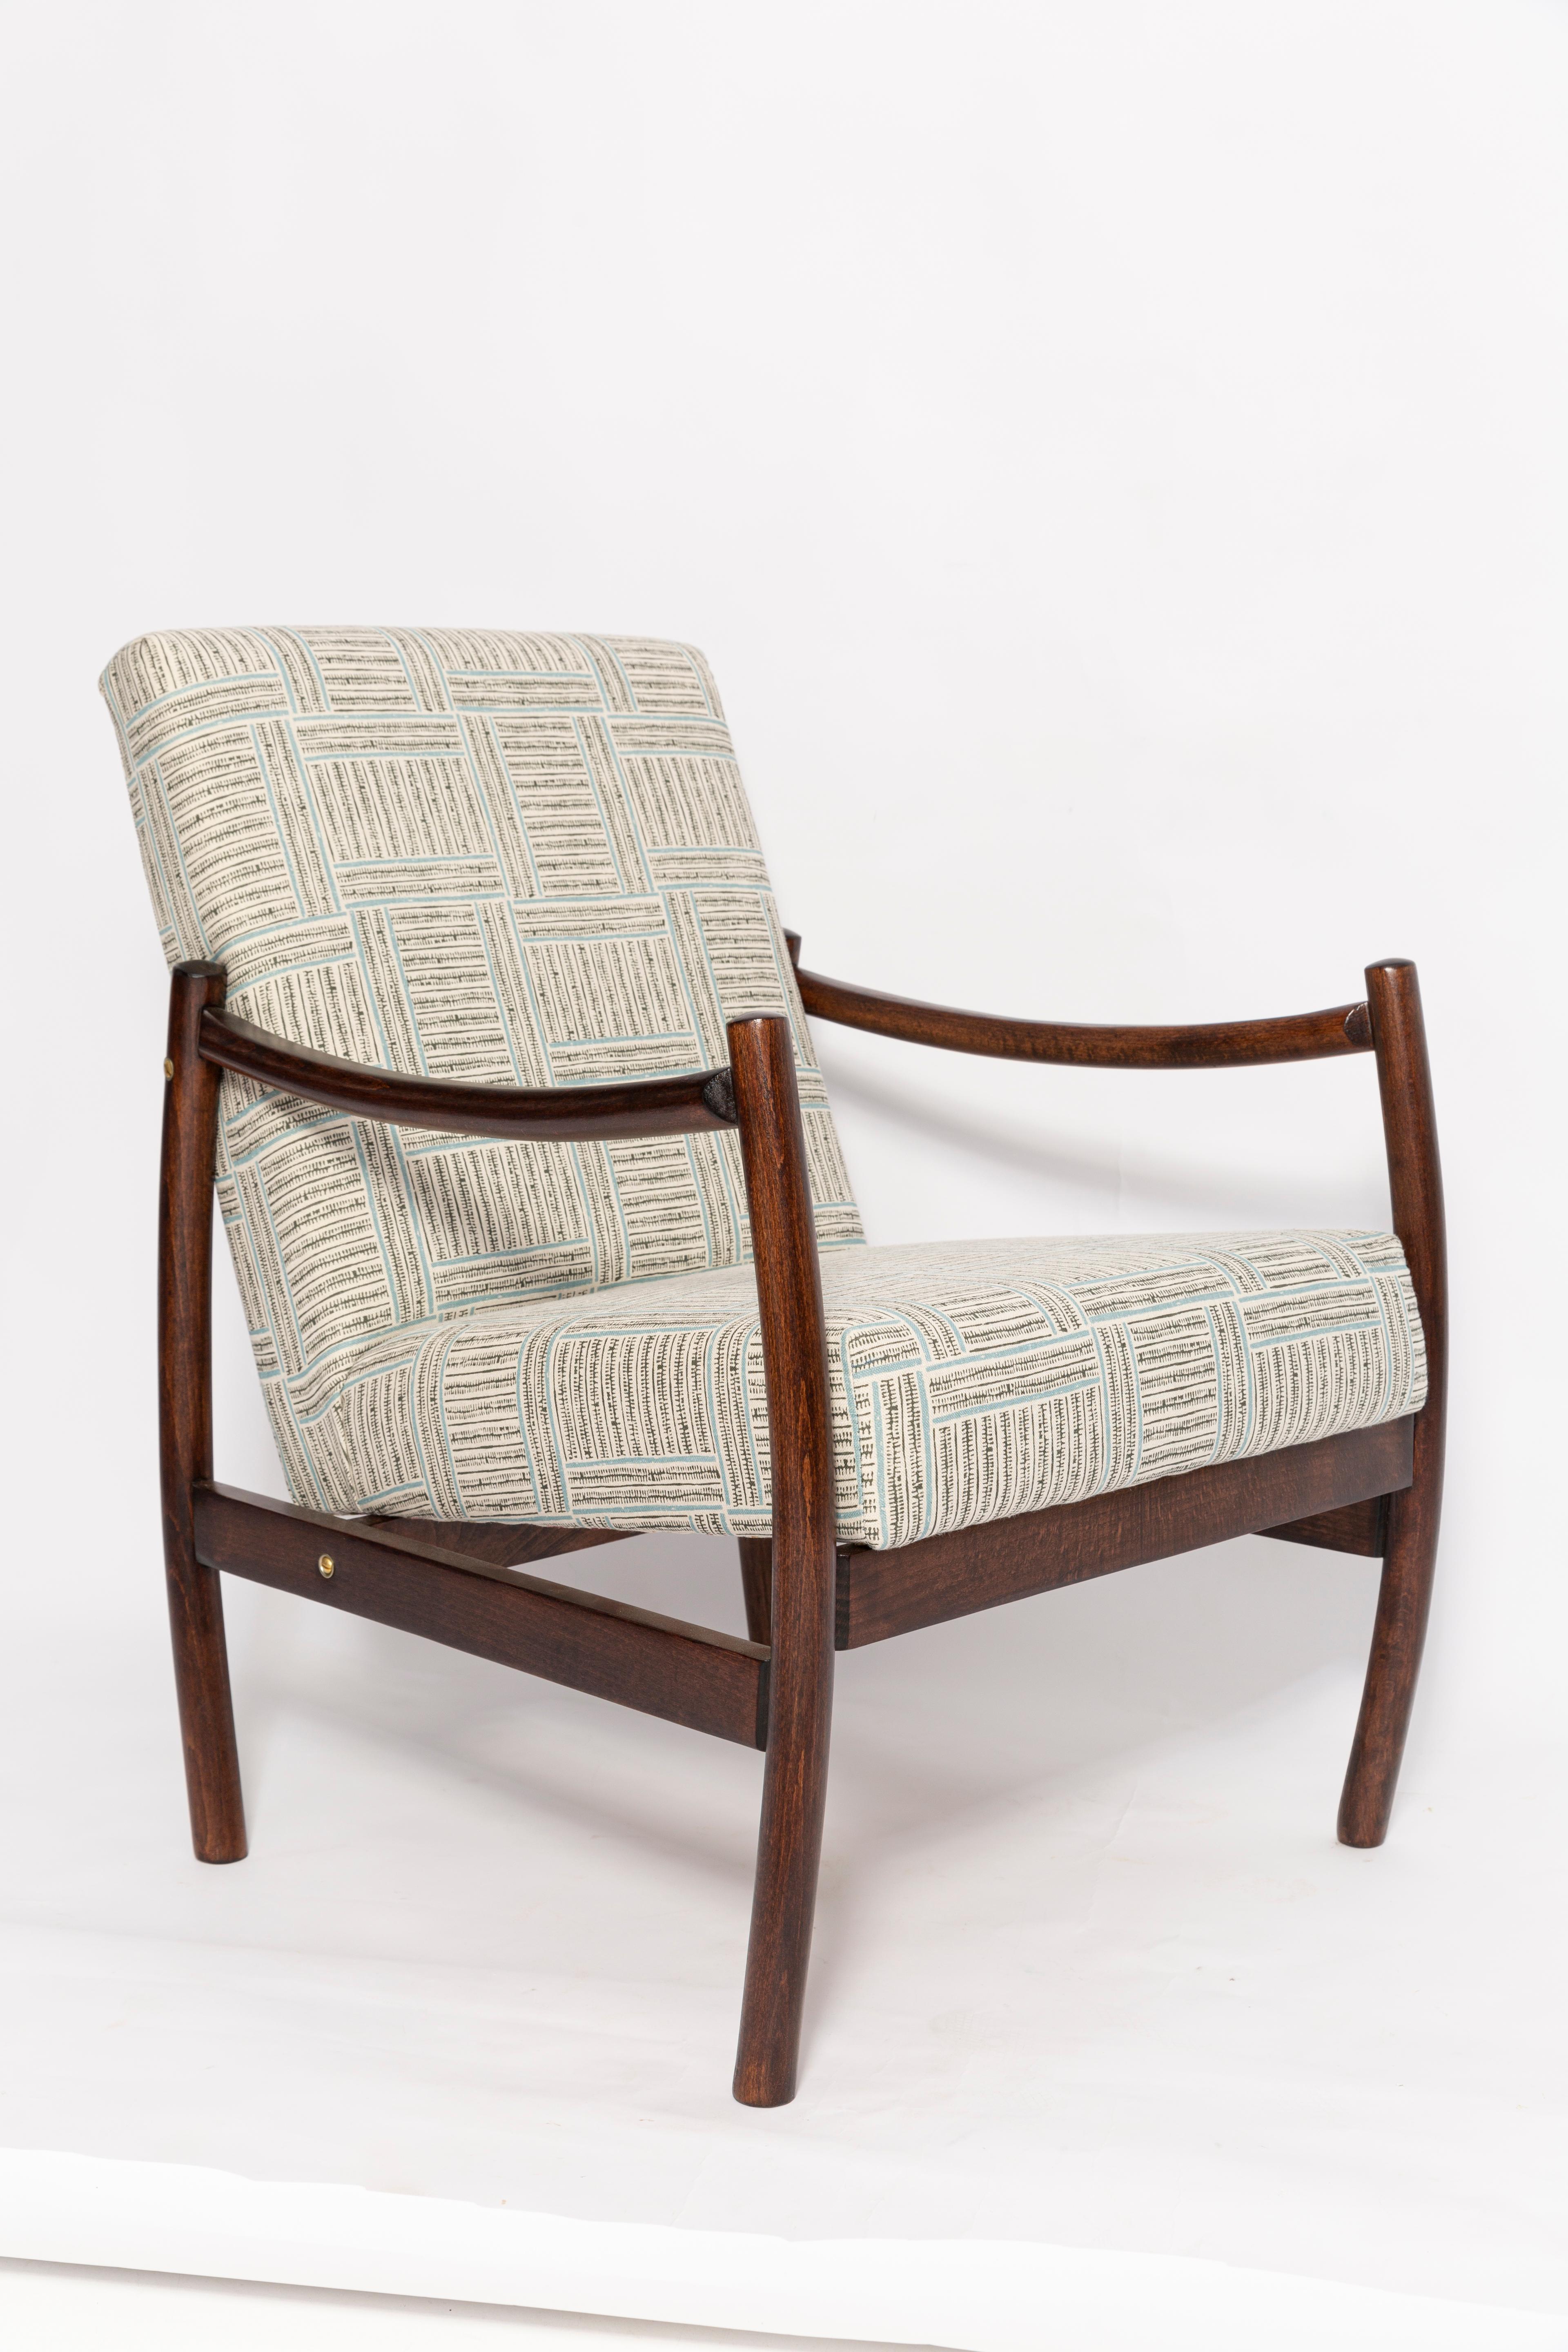 Sessel, hergestellt in den 1960er Jahren von den Möbelfabriken Radom. Sehr bequemer Sitz mit hochwertigem Stoffbezug. Die Sessel sind vollständig getischlert und gepolstert. Äußerst komfortables Modell. Wir können auch andere Farbvarianten von